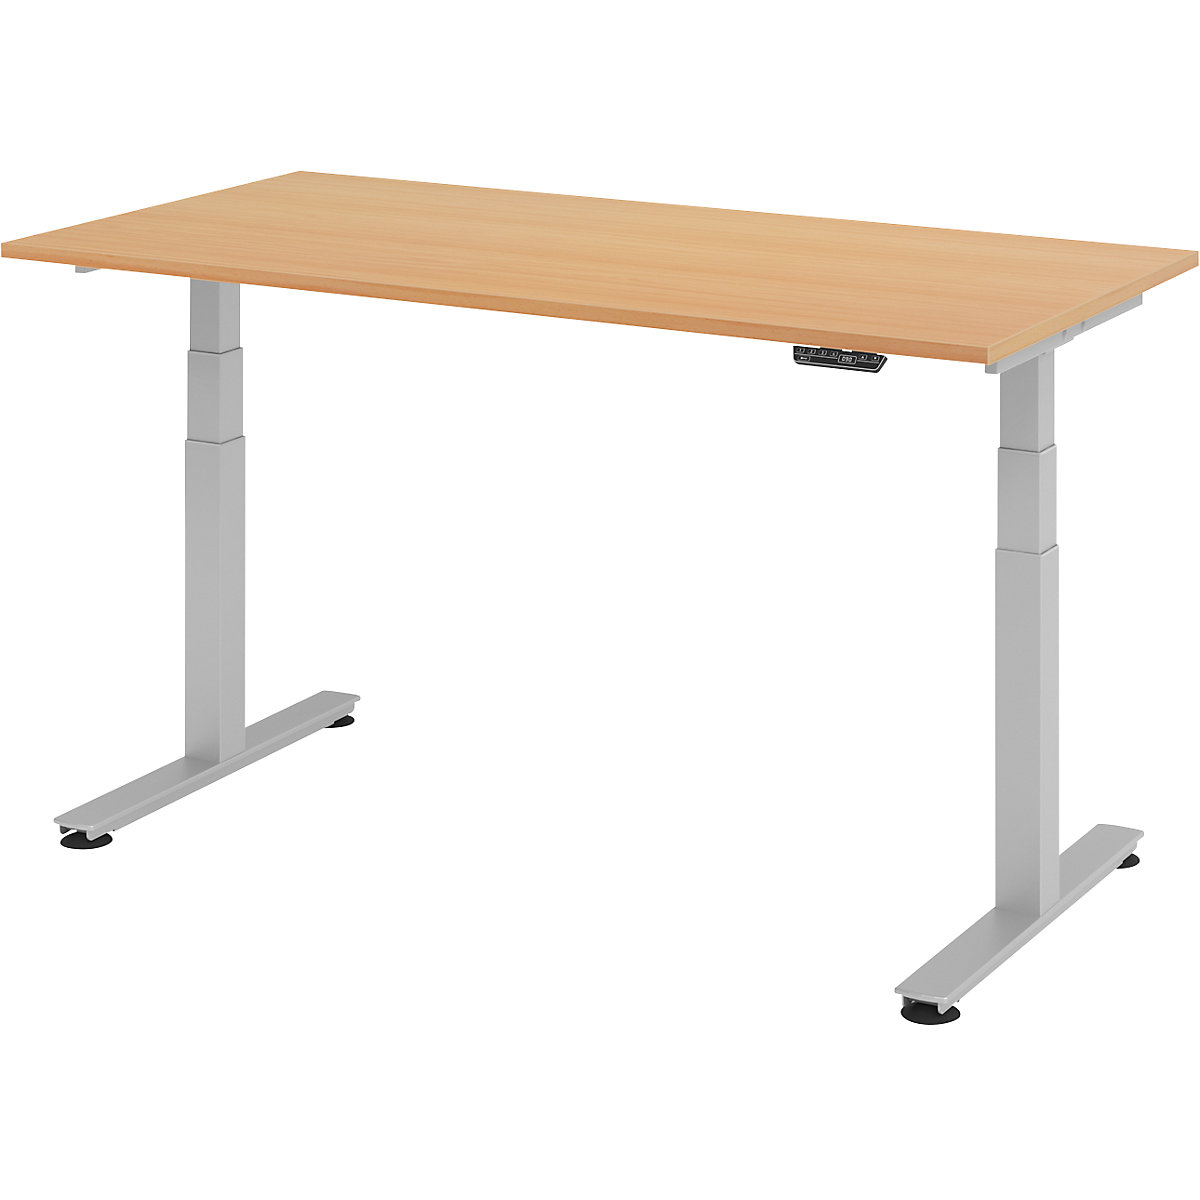 Sta-bureautafel, elektrisch in hoogte verstelbaar UPLINER-2.0, T-vormig onderstel, breedte 1200 mm, beukenhoutdecor-9